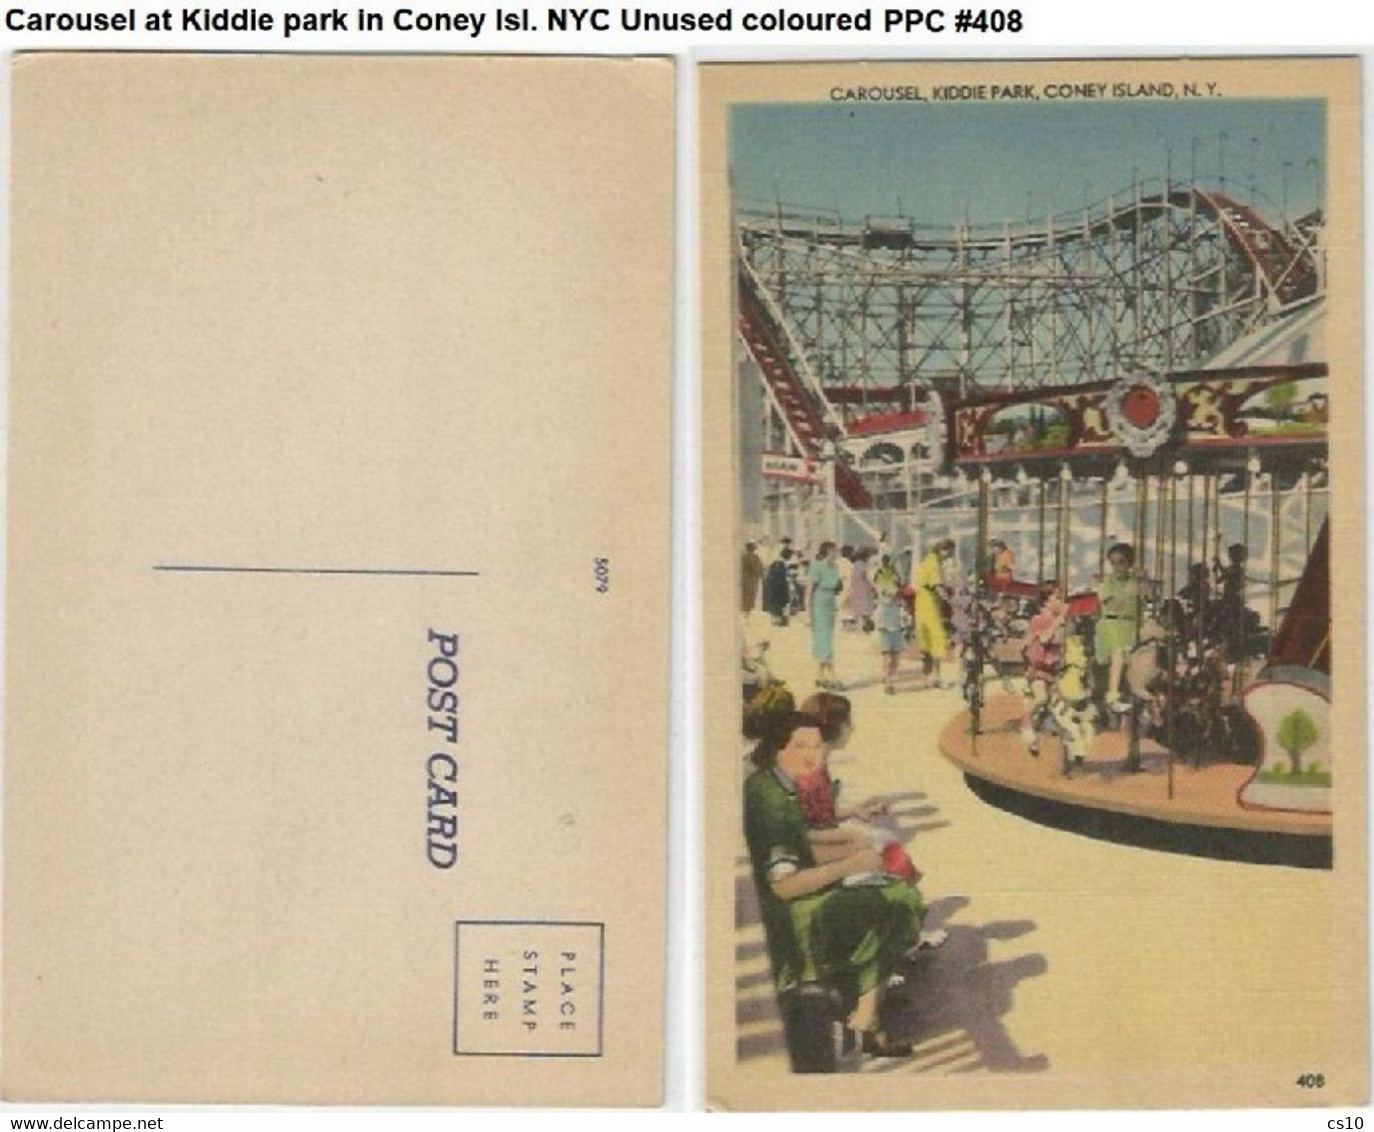 Carousel At Kiddie Park In Coney Isl. NYC Unused Coloured PPC #408 - Parcs & Jardins